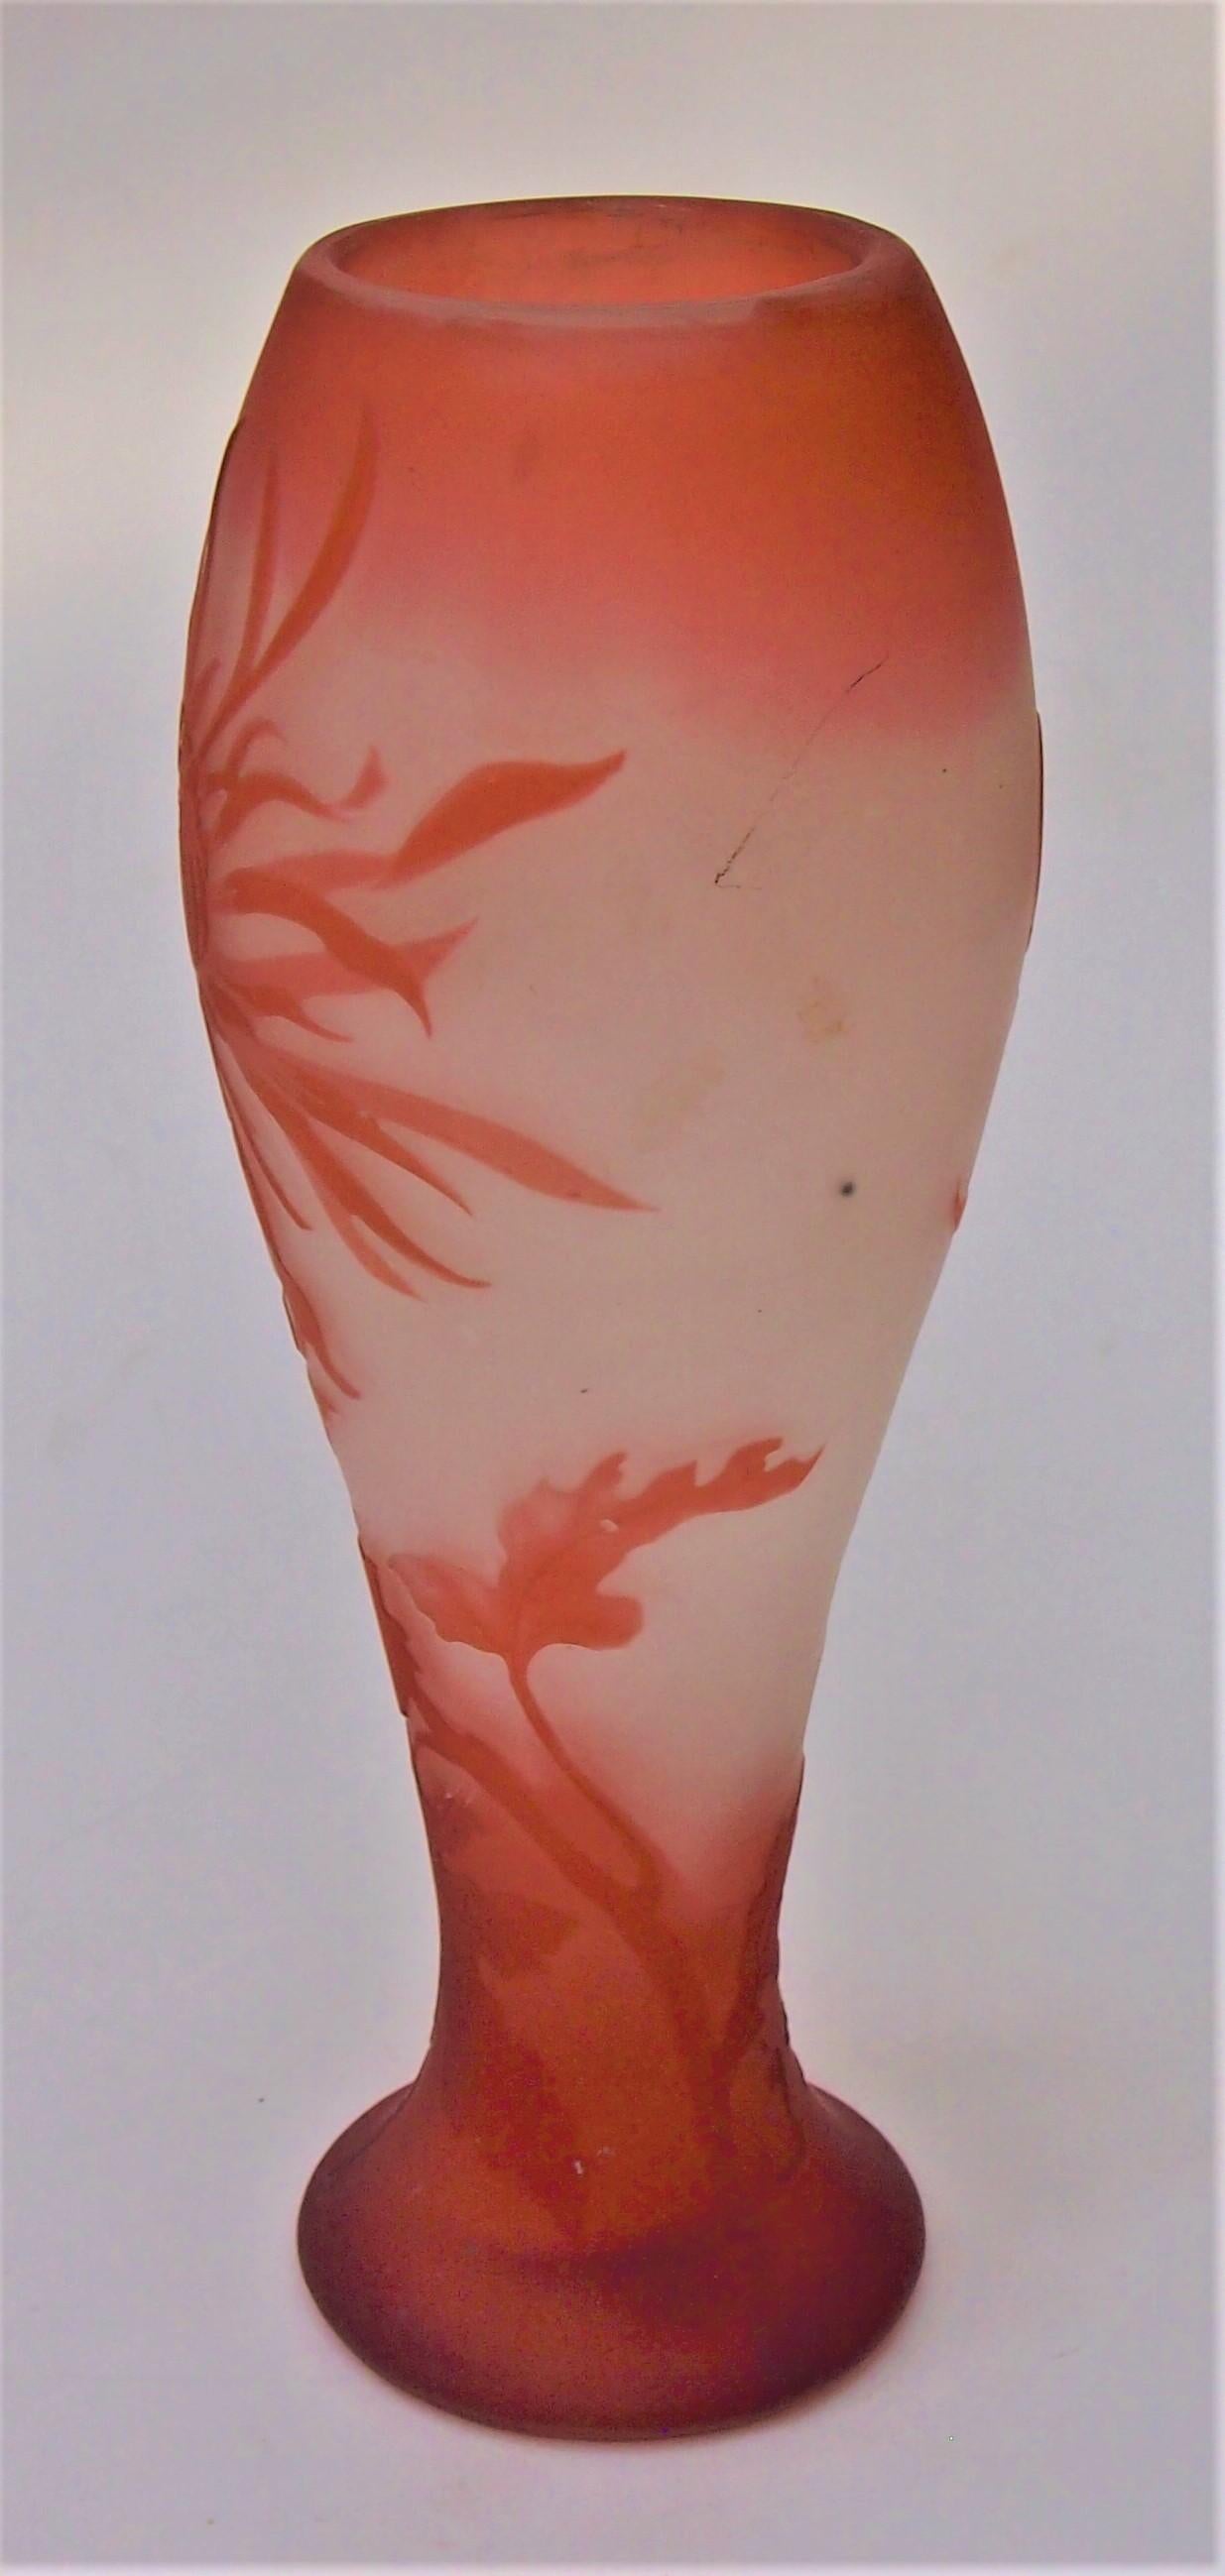 Seltene und frühe Art Nouveau Emile Galle Kamee-Glasvase, die stachelige Dahlienblüten in Orange über mattiertem Klarglas darstellt, signiert in Kamee (siehe Bild 5) mit der zusätzlichen super seltenen limitierten Nummer 13 - in Kamee erhaben